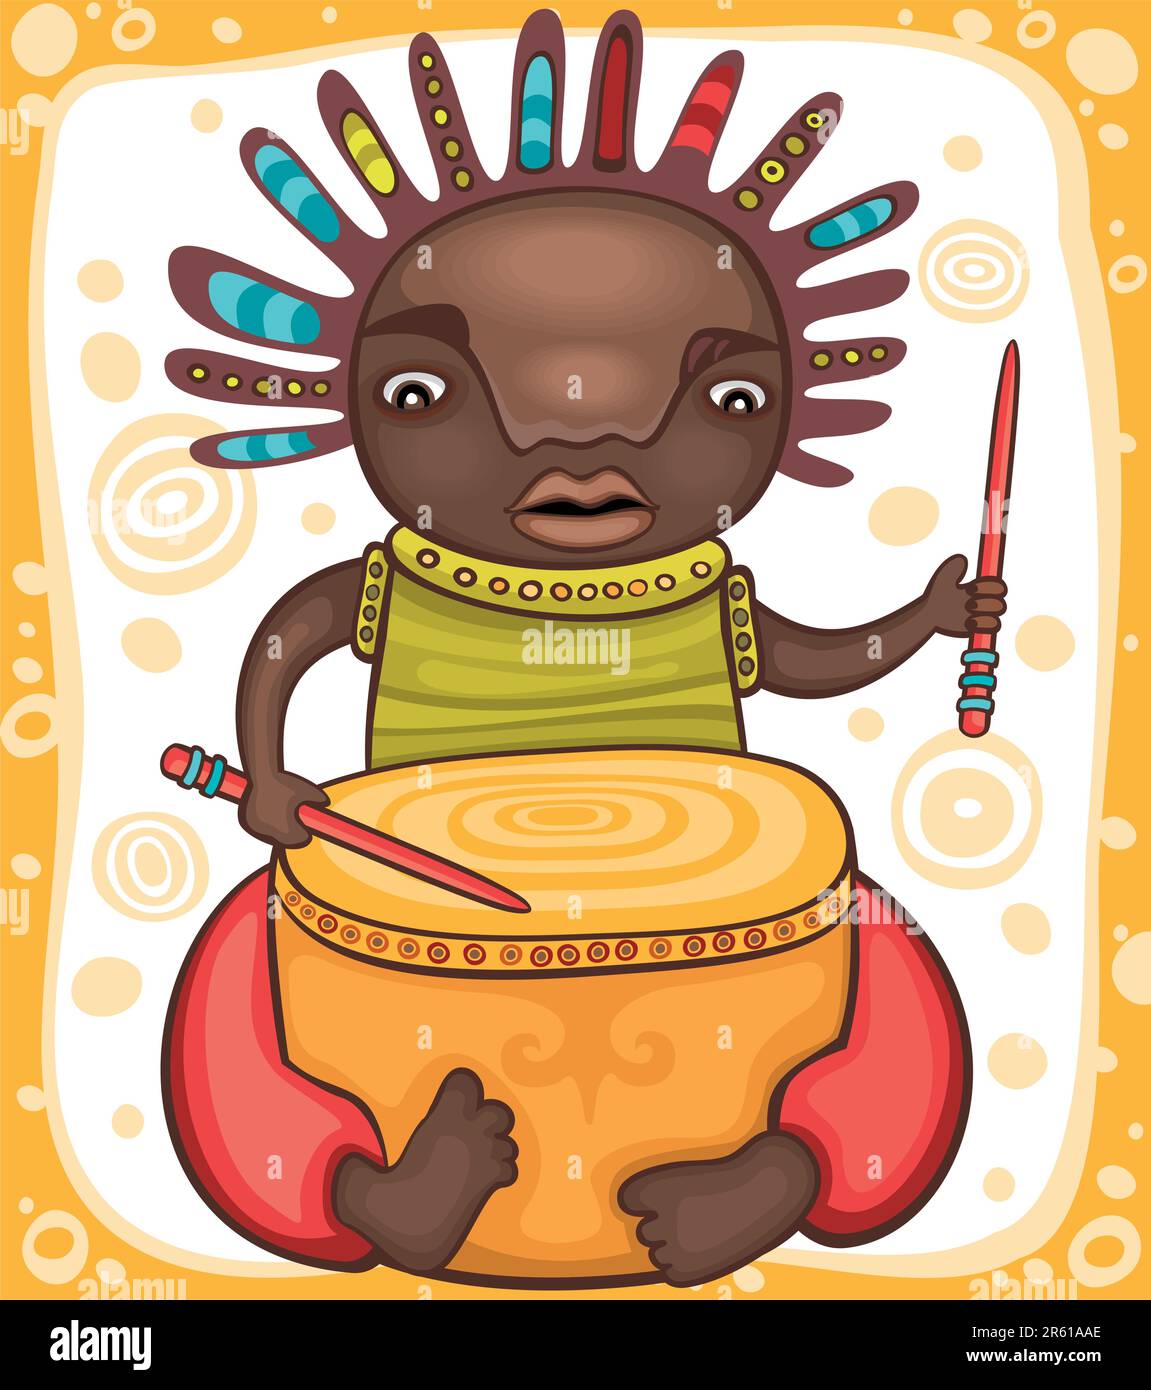 Farbenfrohes Porträt des afrikanischen Schlagzeugers mit Dreadlocks. Stock Vektor